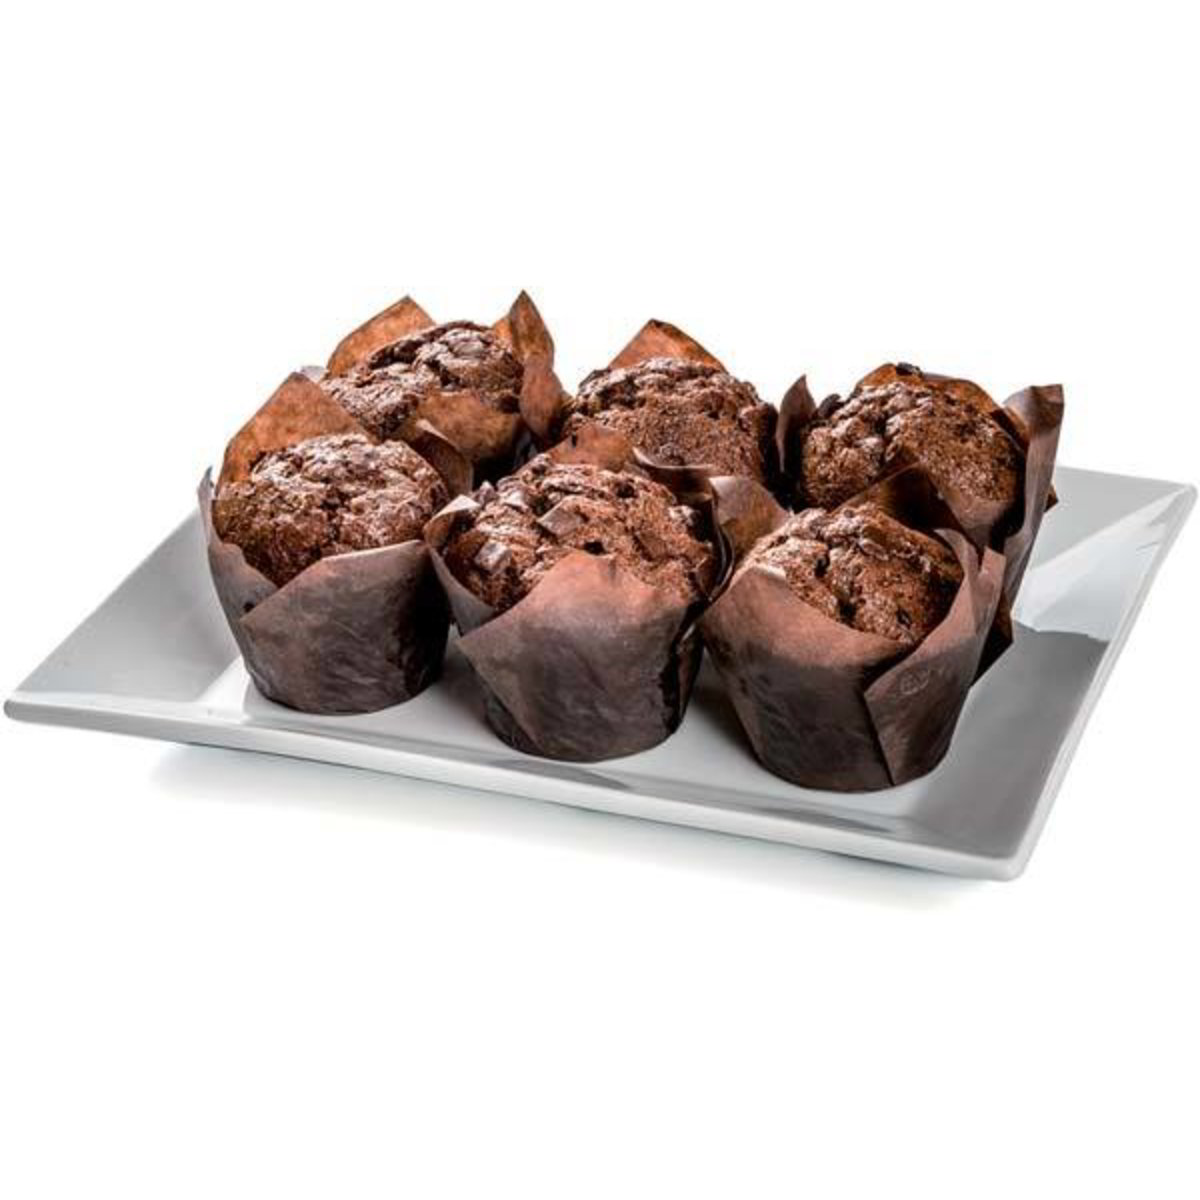 Merendine muffin sogno al cioccolato DELIFRANCE 90 G - Coop